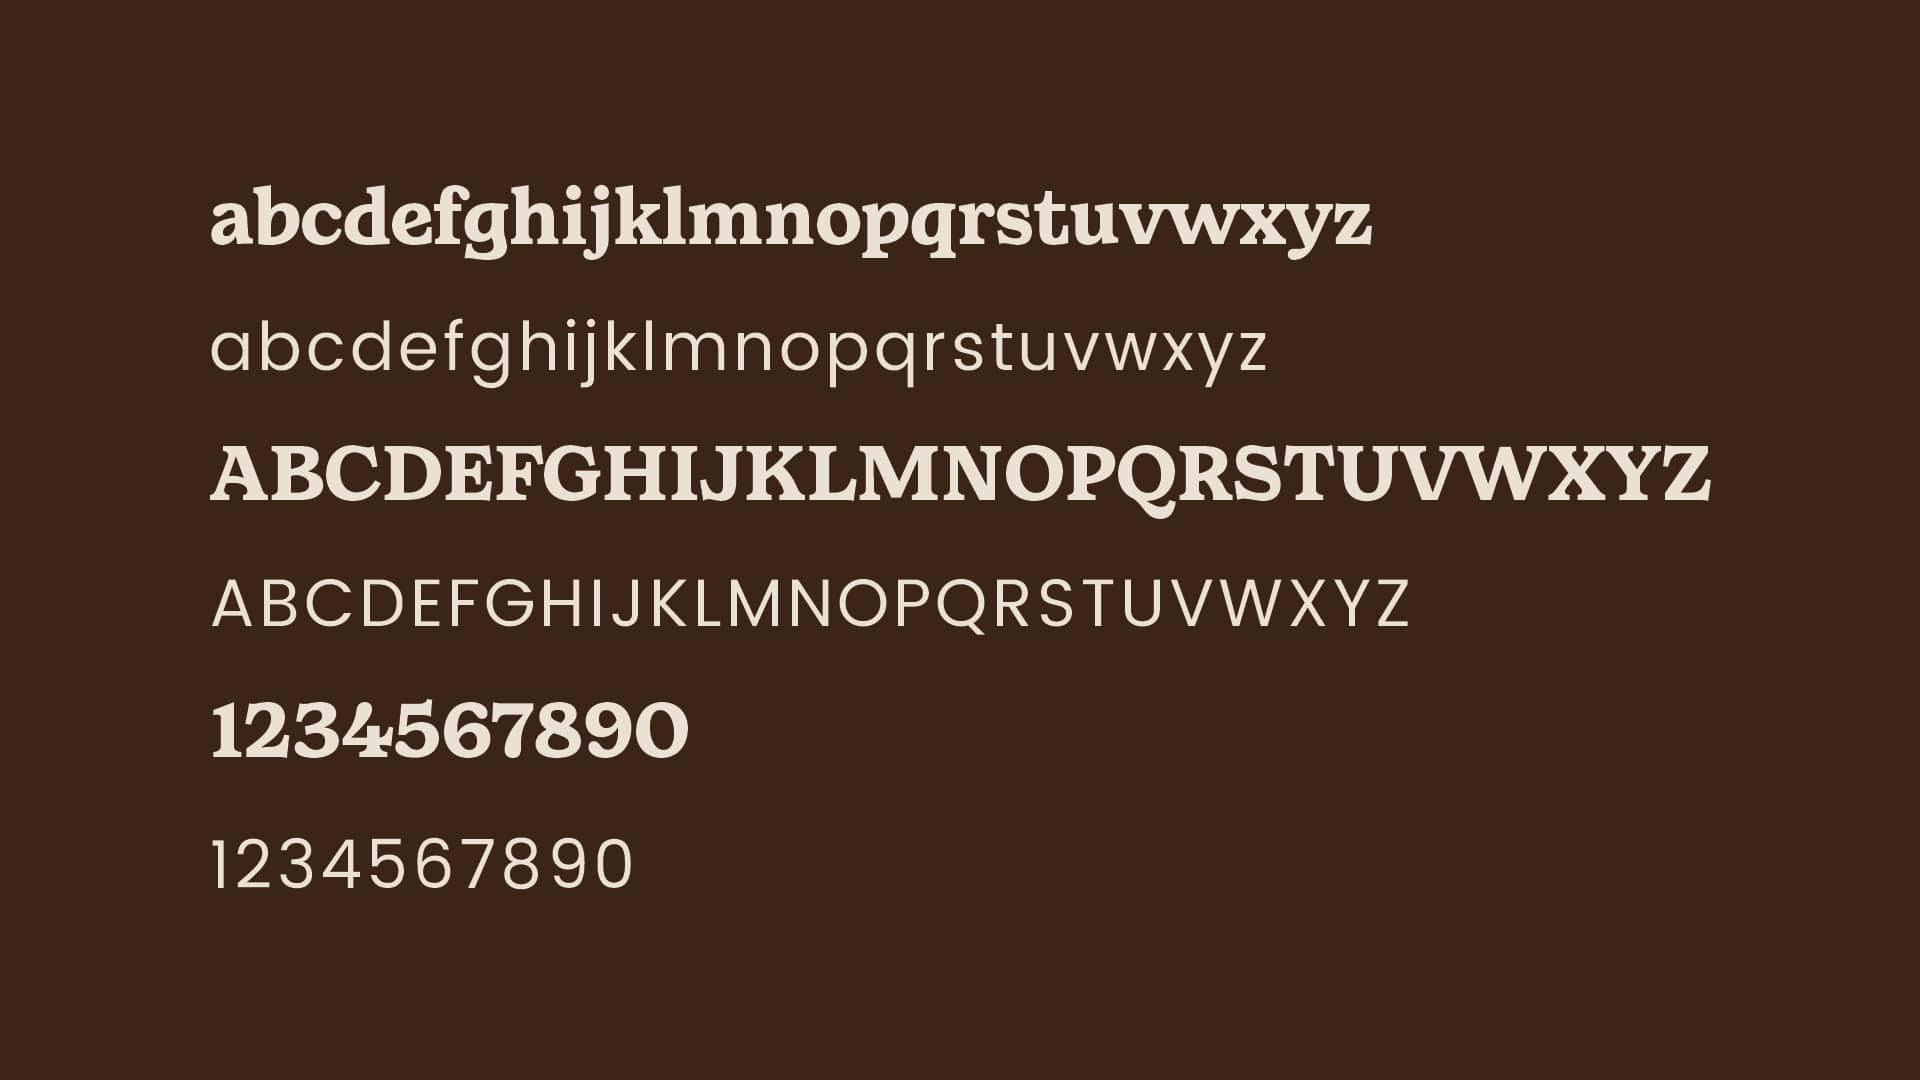 Image of Kind Habit brand fonts.